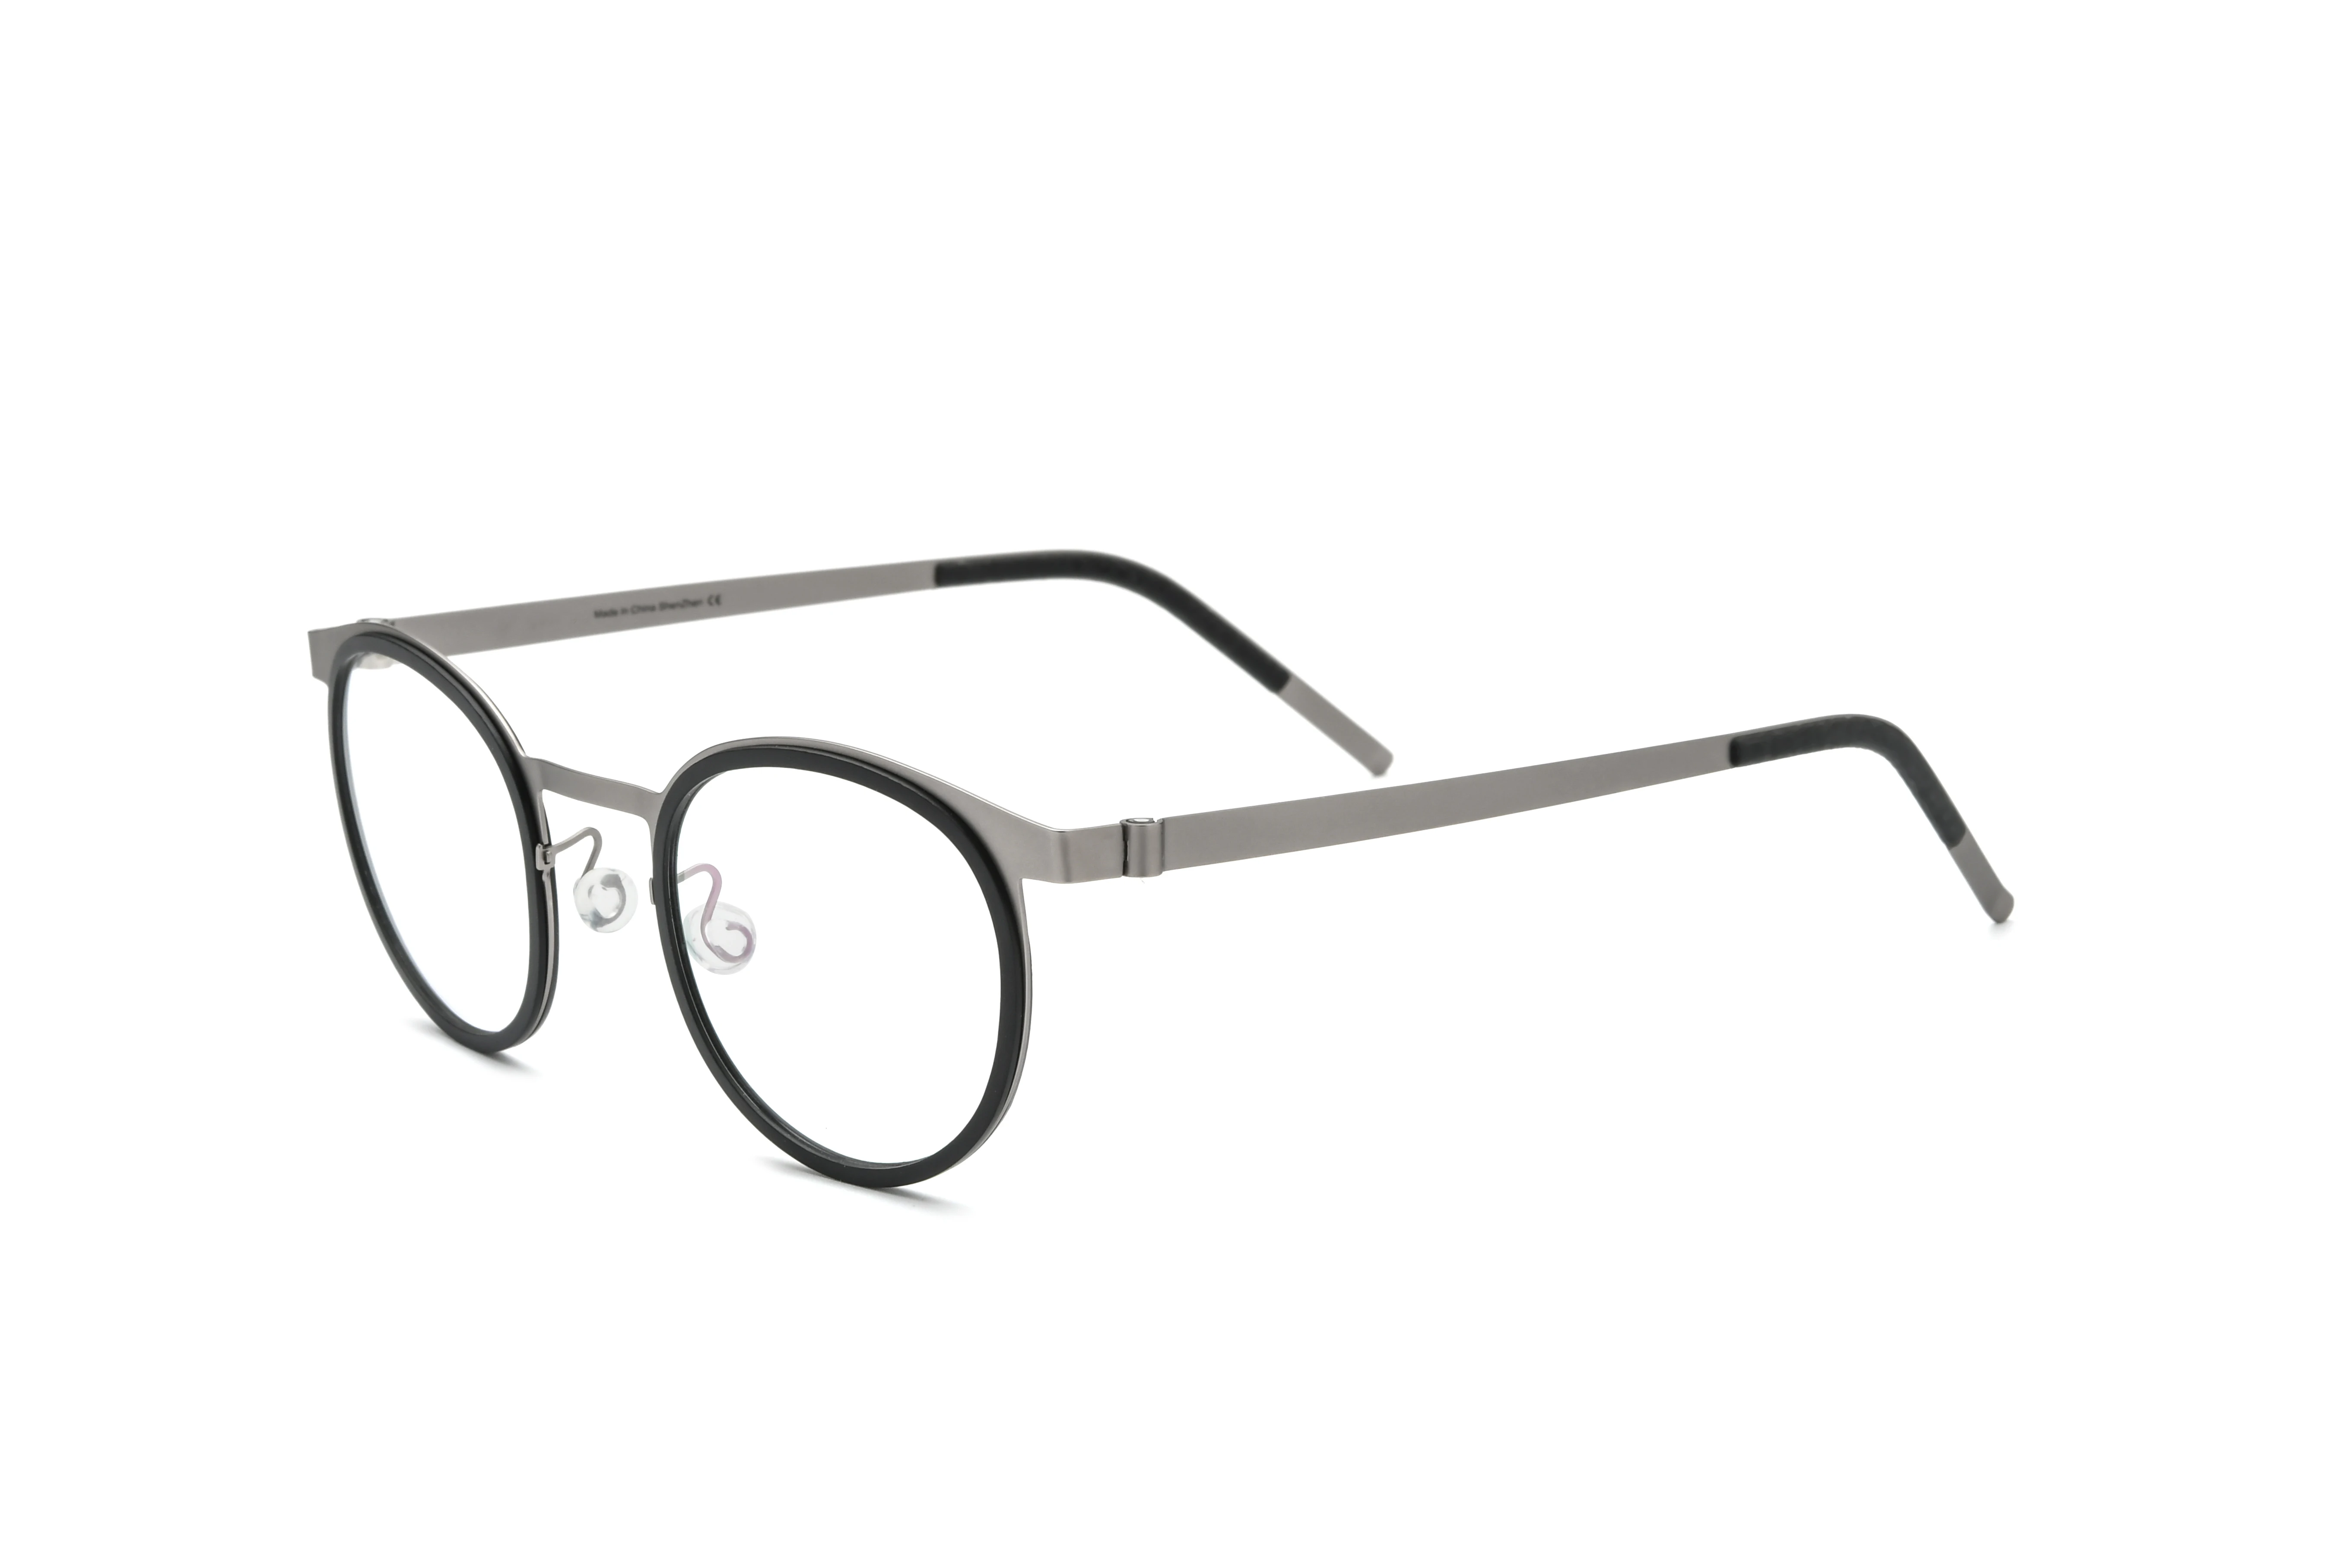 Titanium Glasses Frame Men Women Round Myopia Optical Prescription Eyeglasses Screwless Korea Eyewear